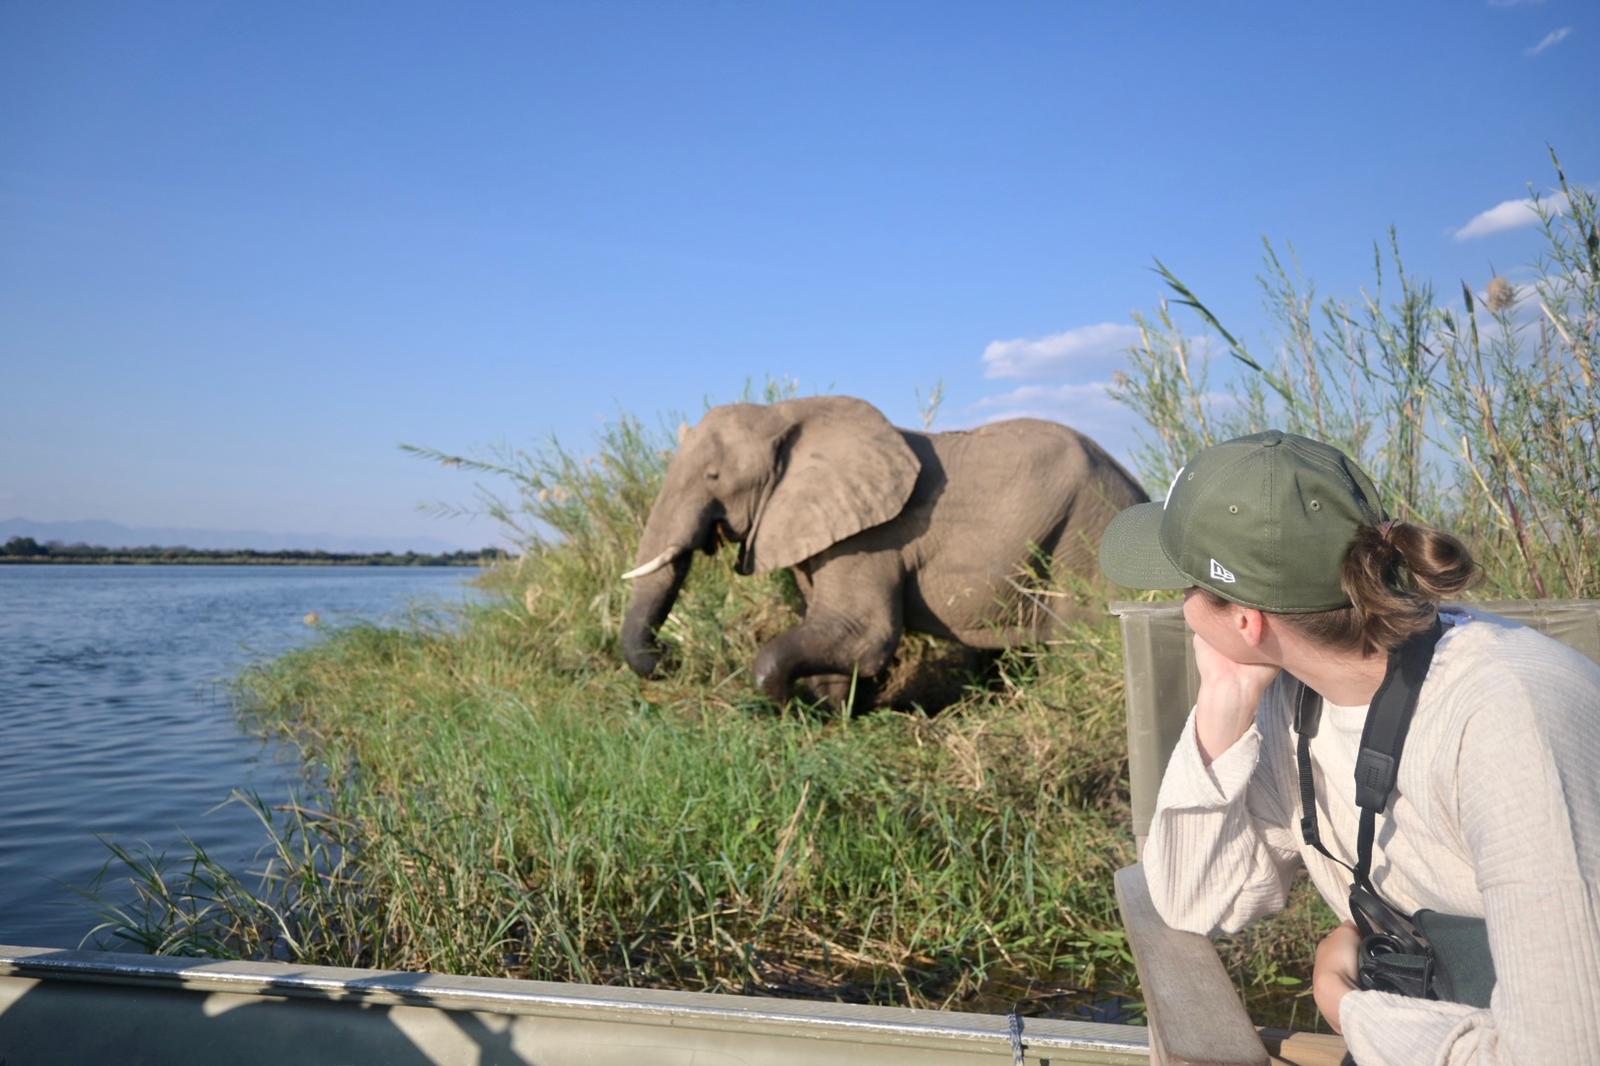 Elephant during boat safari on Zambezi river Zambia